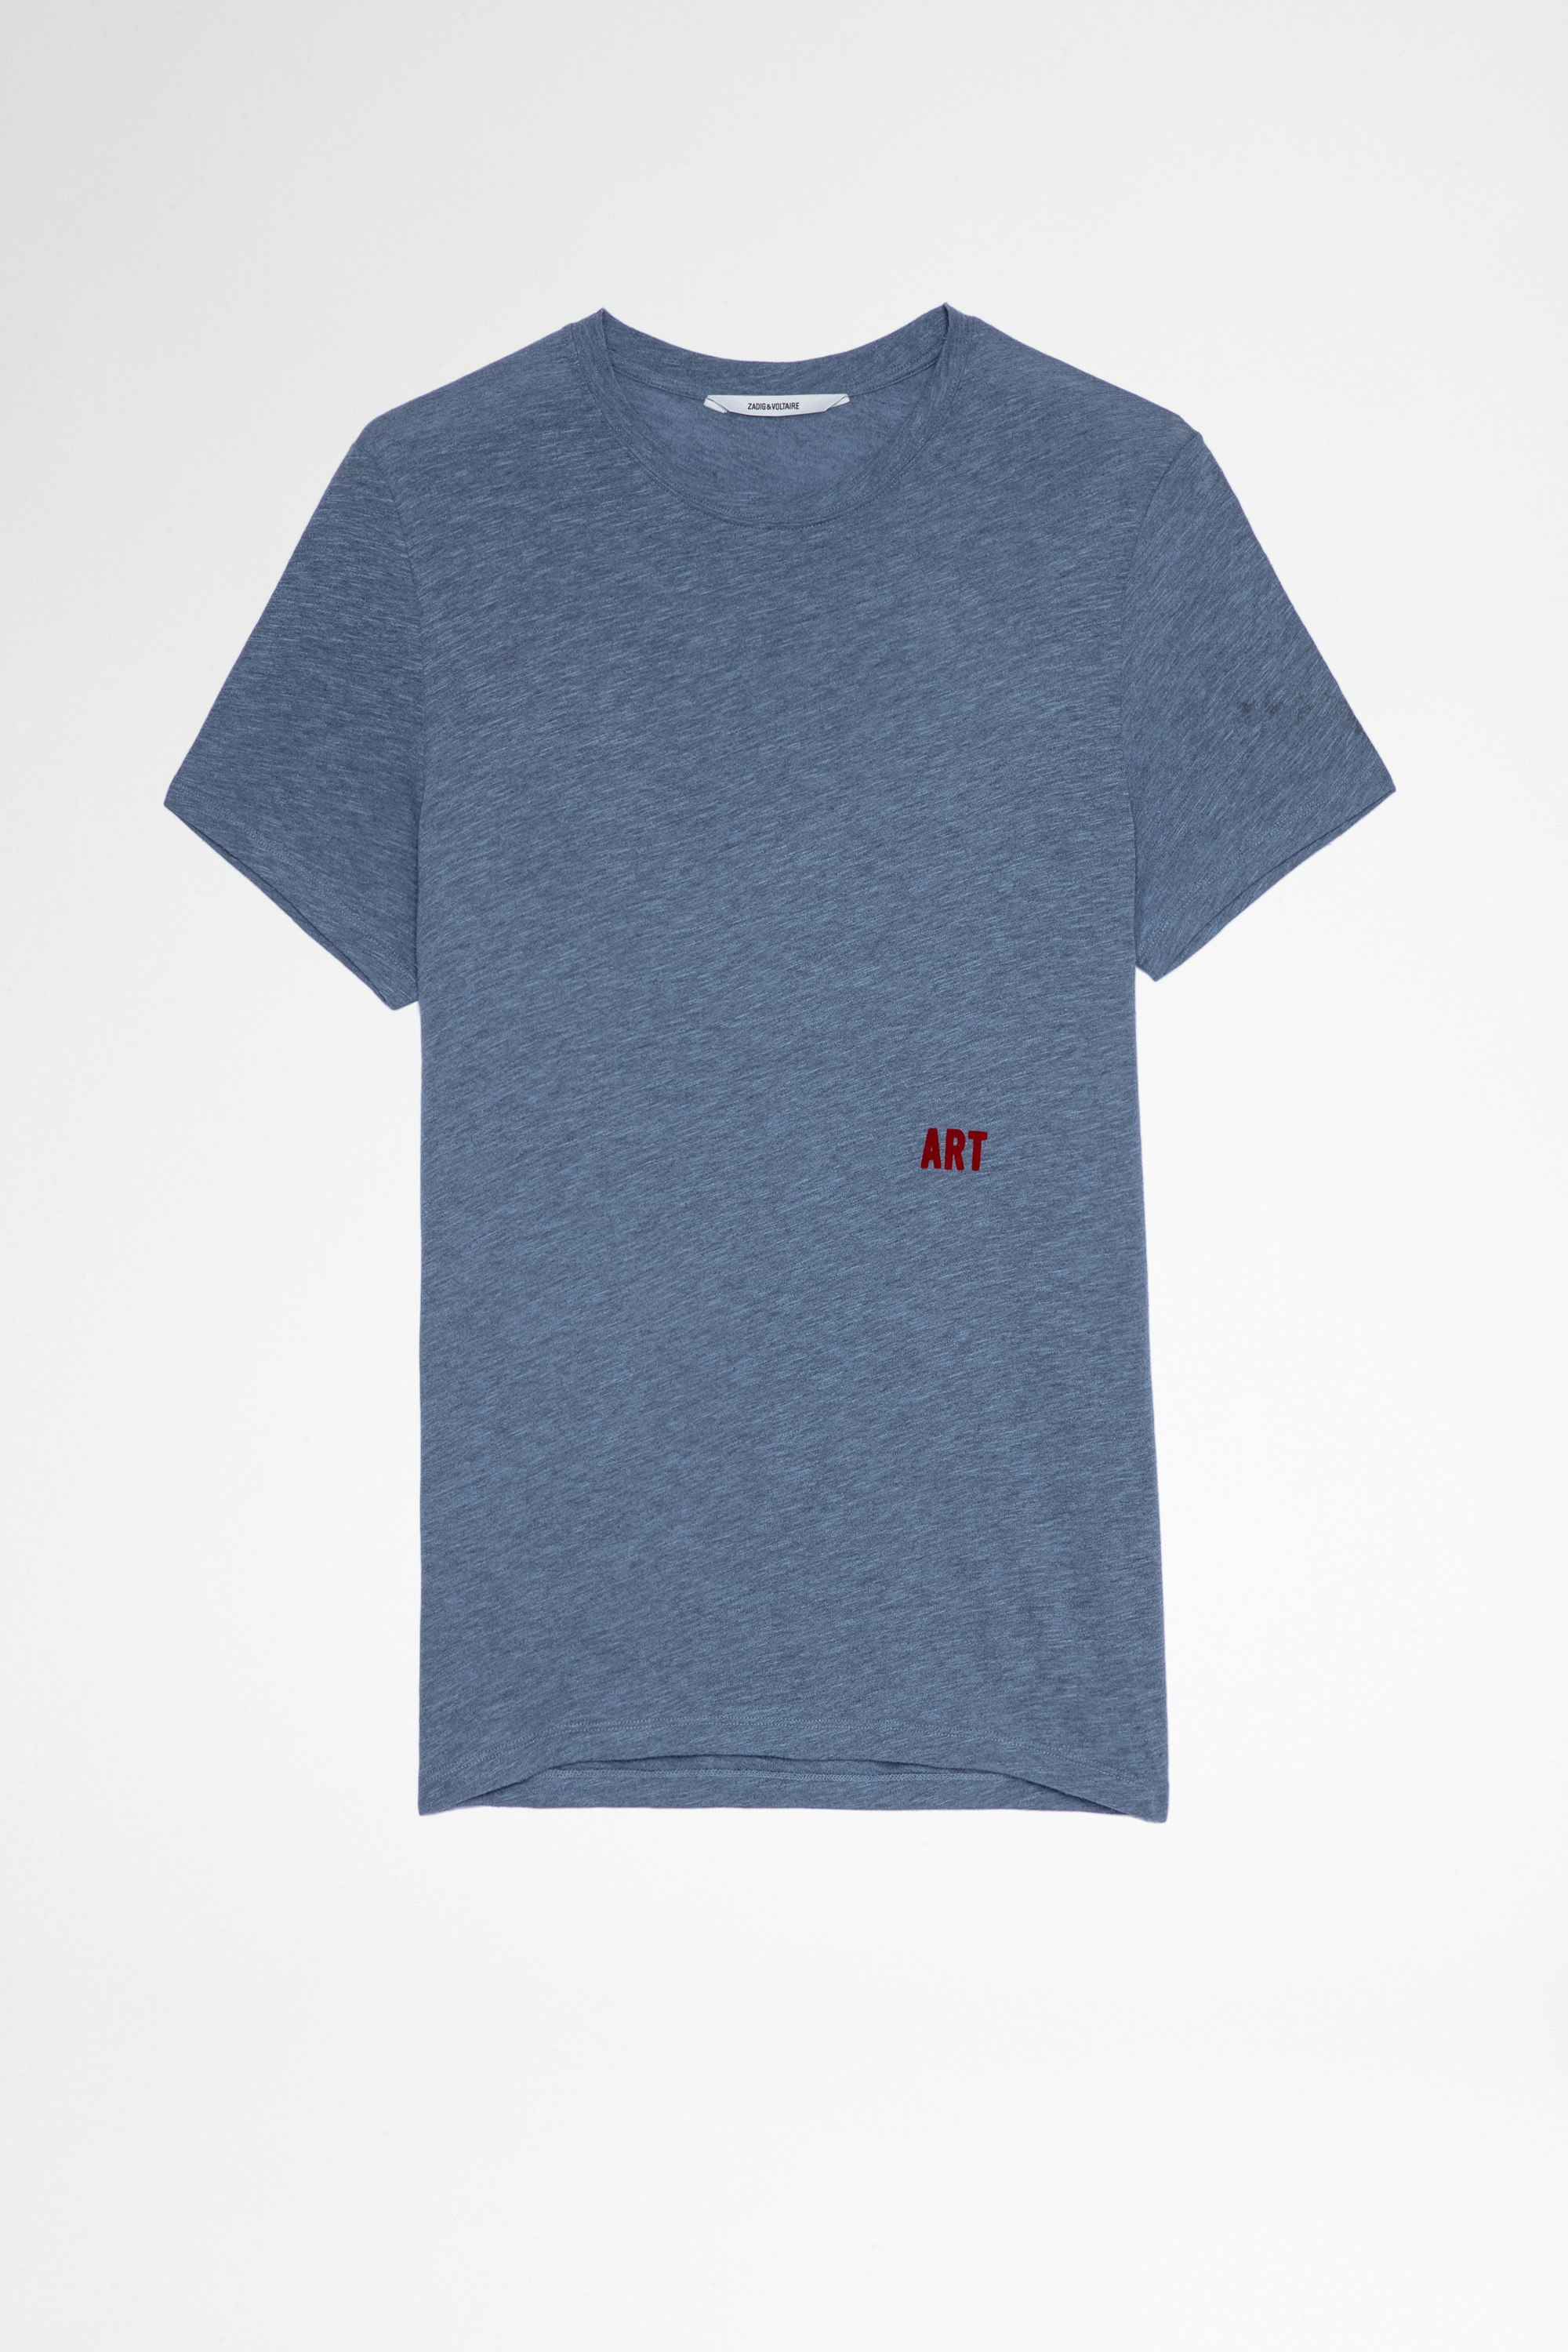 T-Shirt Tommy Herren-T-Shirt aus blauer Baumwolle und Viskose Art